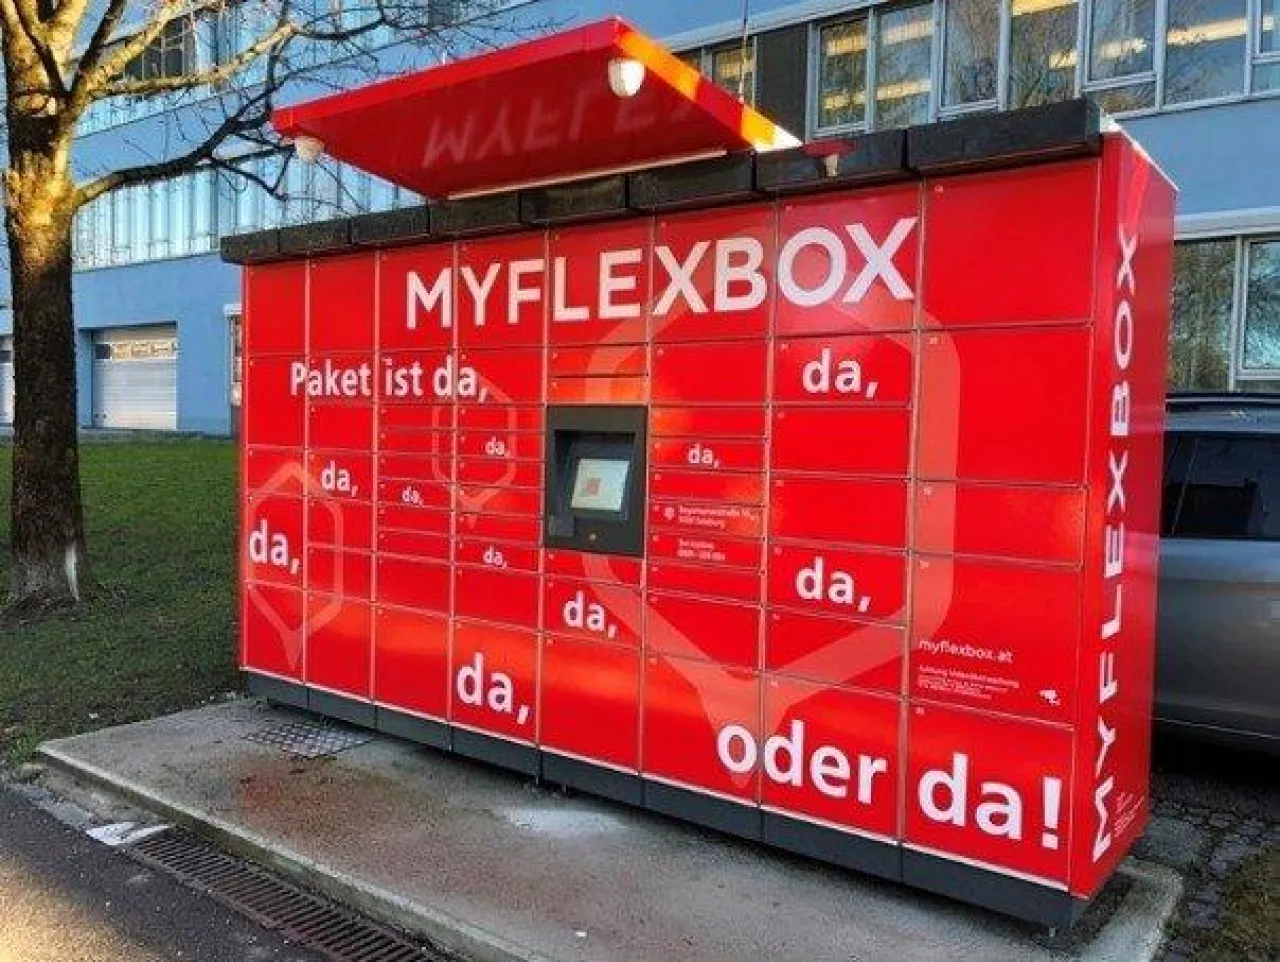 Urządzenia Myflexbox w austriackim Salzburgu (fot. materiały prasowe)